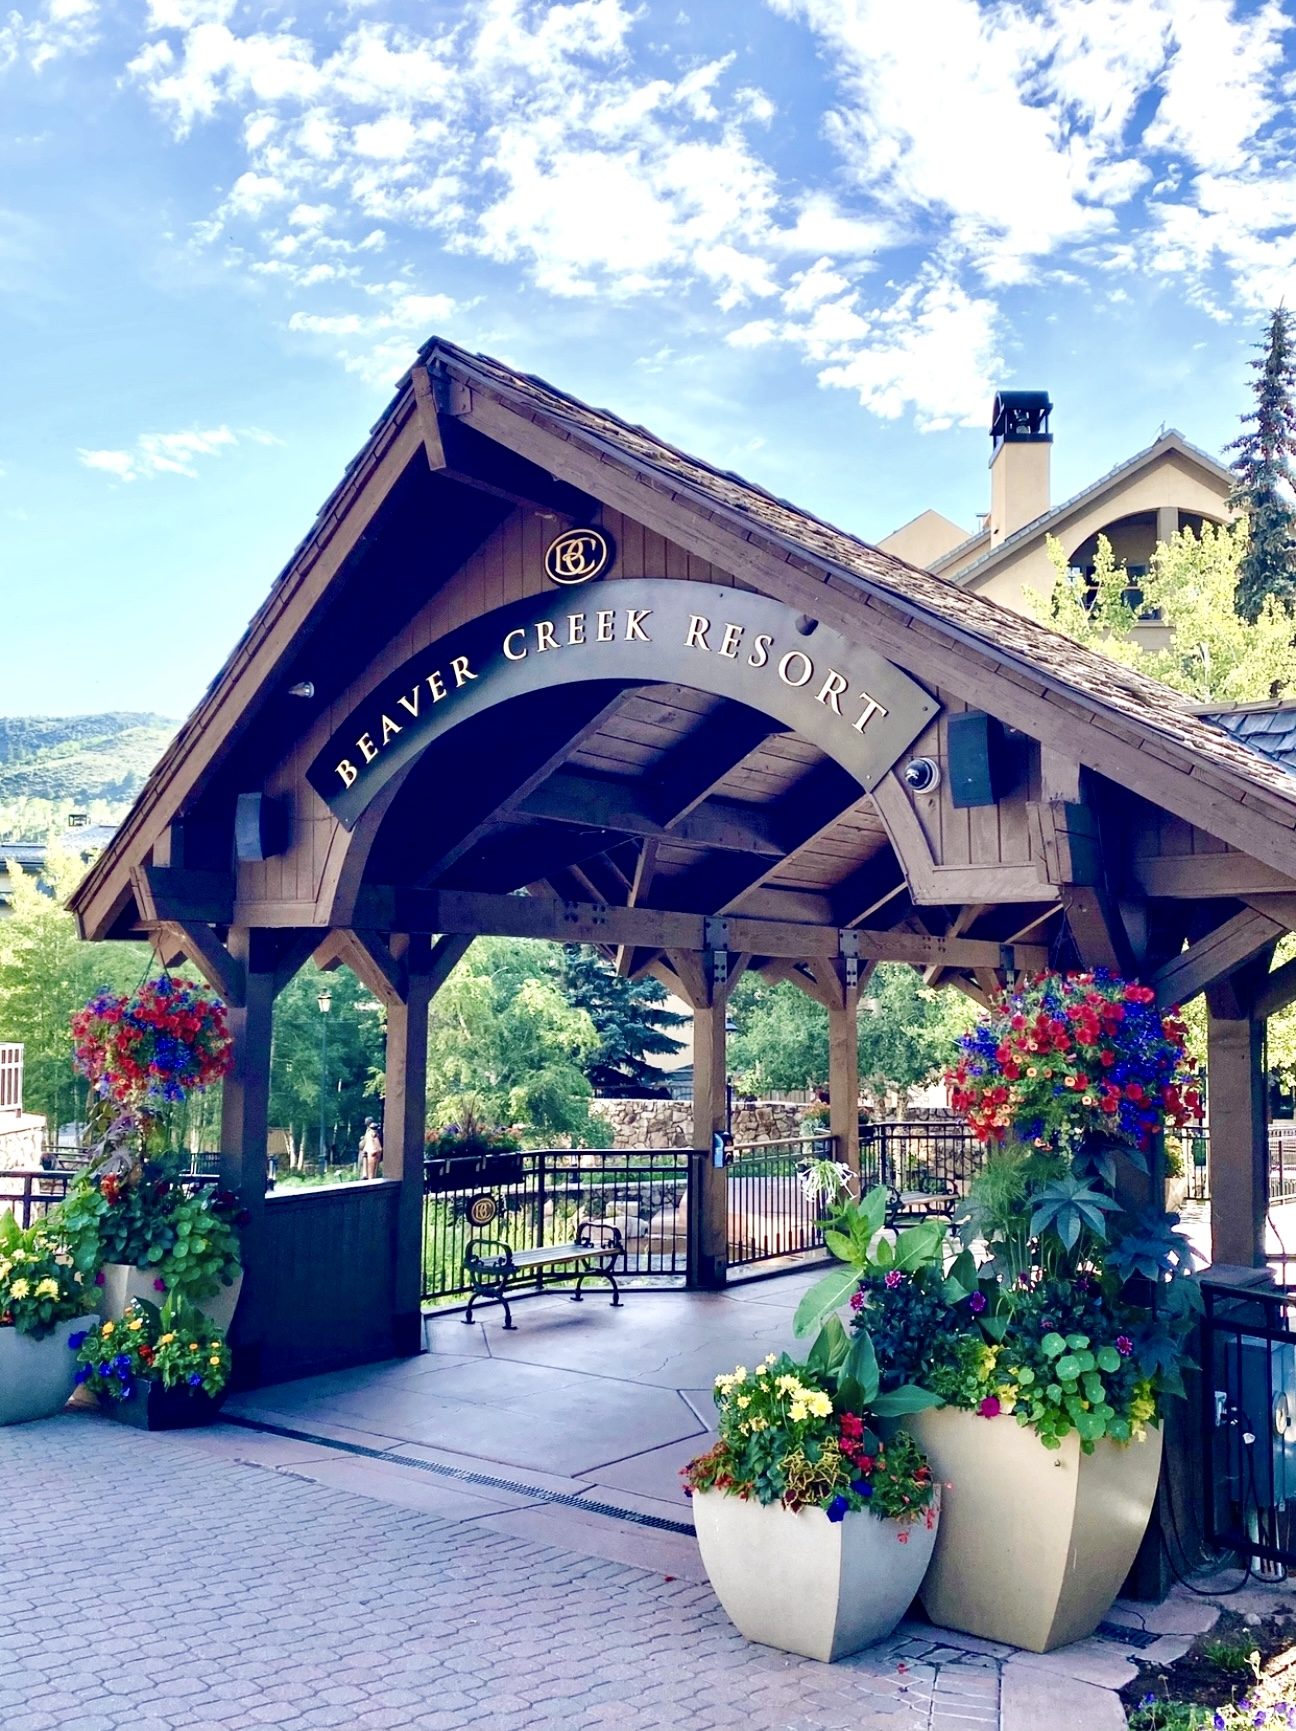 Entrance to Beaver Creek Resort in Colorado